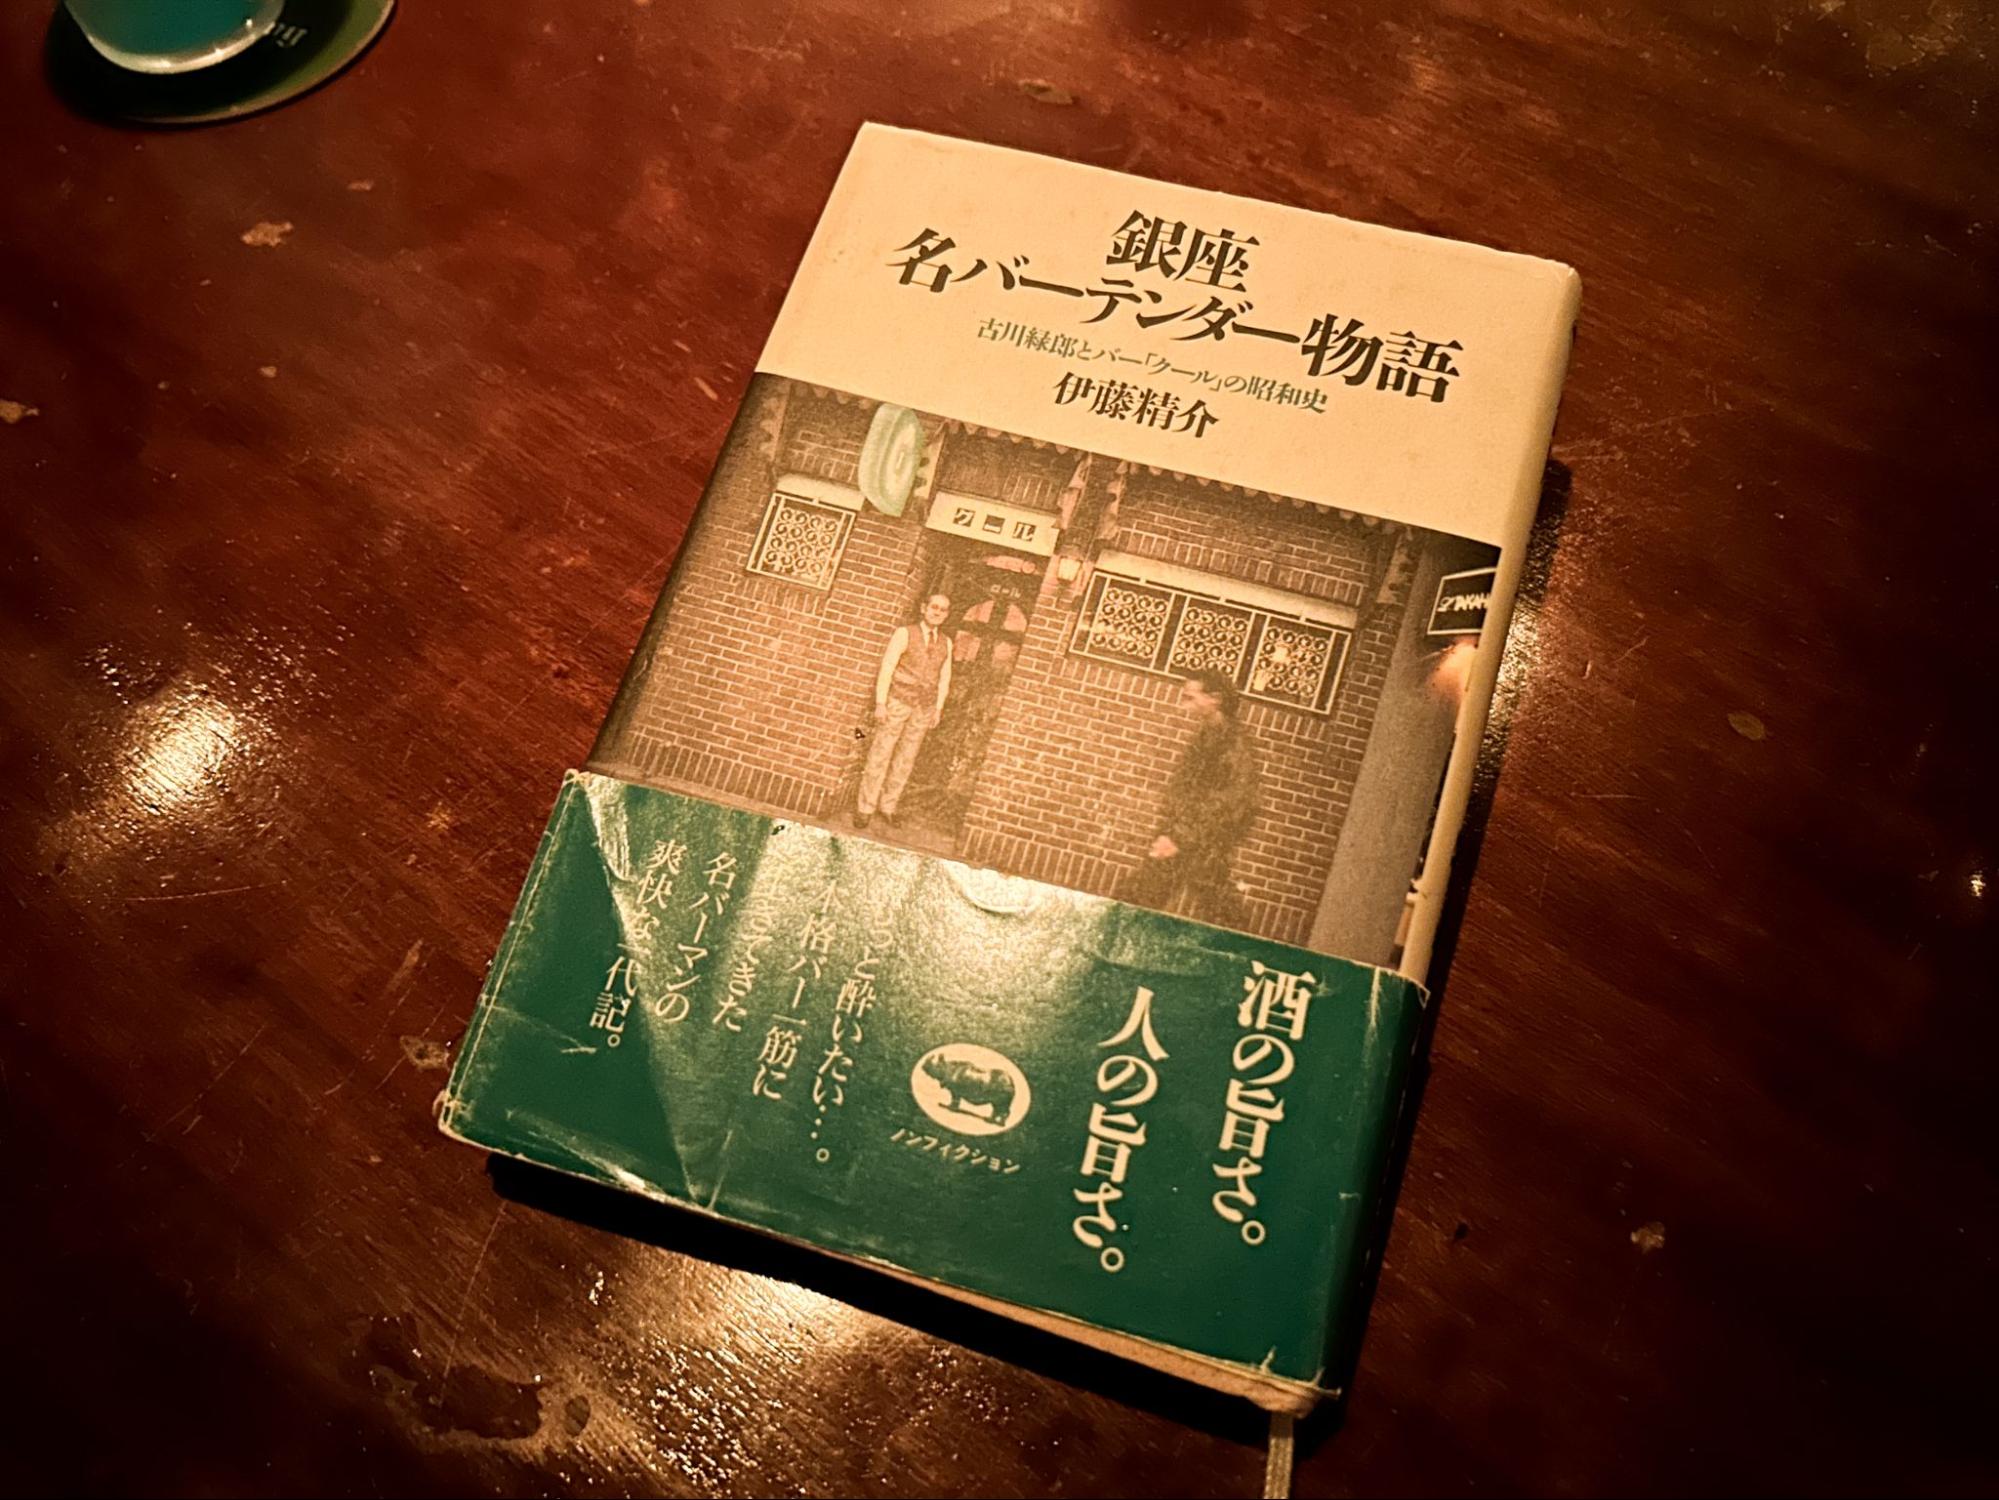 石川さんが愛した名店・クールの本